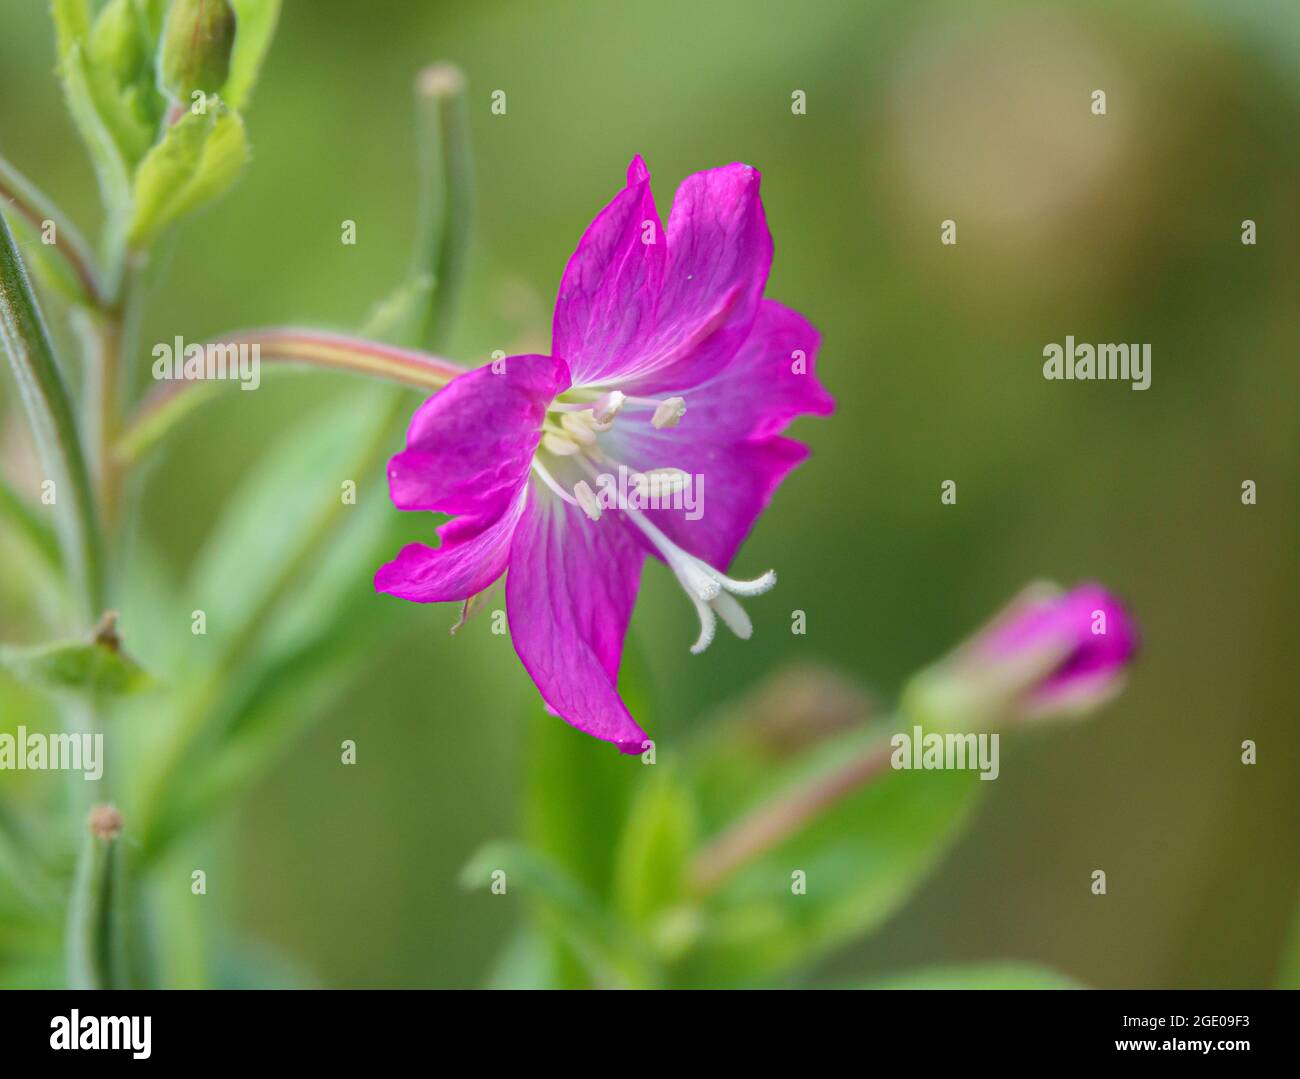 close up of the beautiful Hairy Willow flower (Epilobium hirsutum) in summer sunshine Stock Photo